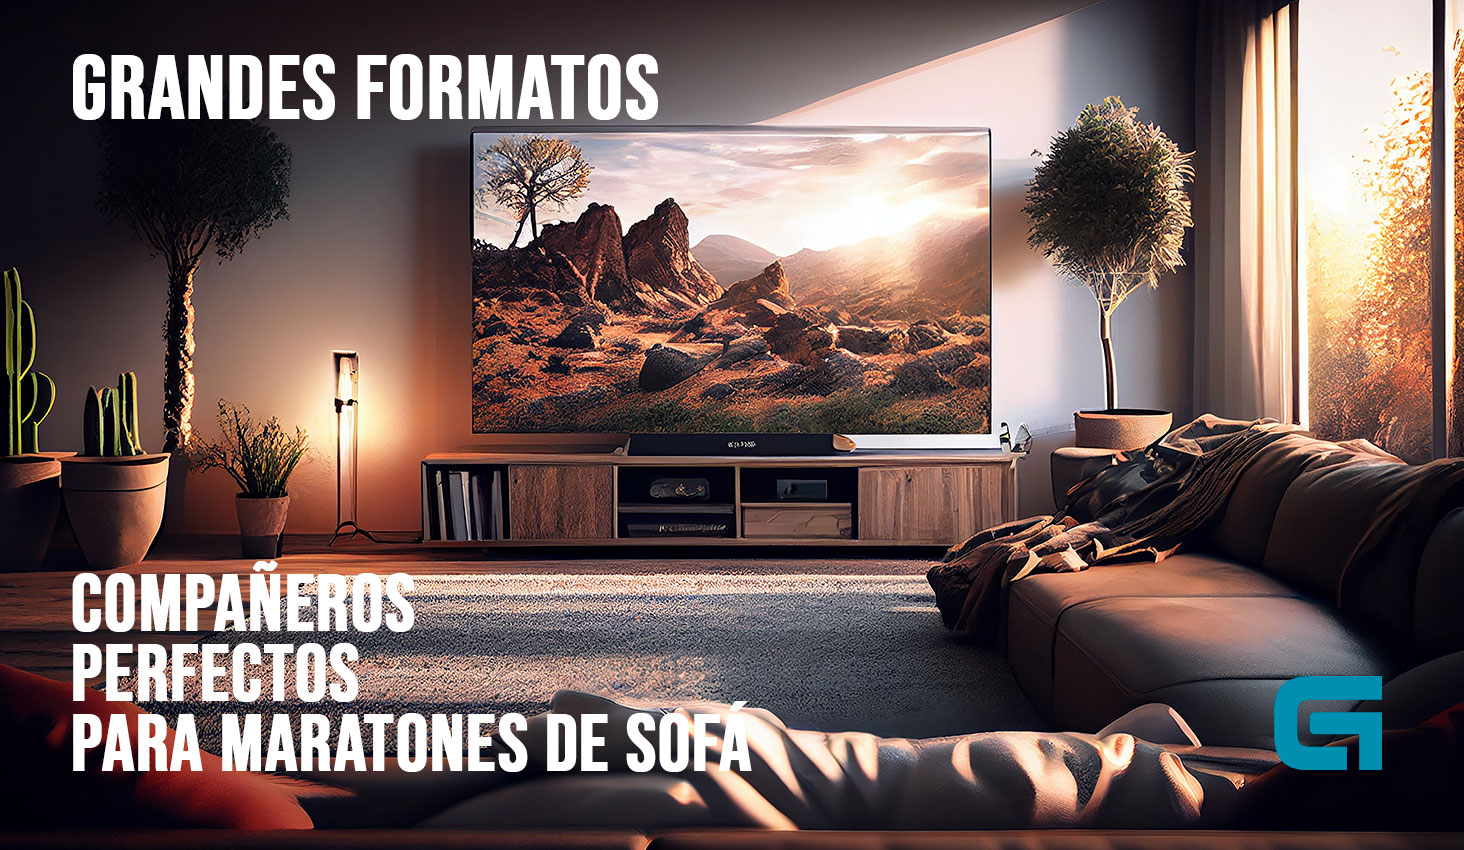 Grunkel - Televisor 55 Pulgadas Smart TV - LED-5521GOO - Incluye Android y  Google Chromecast con Pantalla de Panel 4K Ultra HD, Wi-Fi. Bajo Consumo y